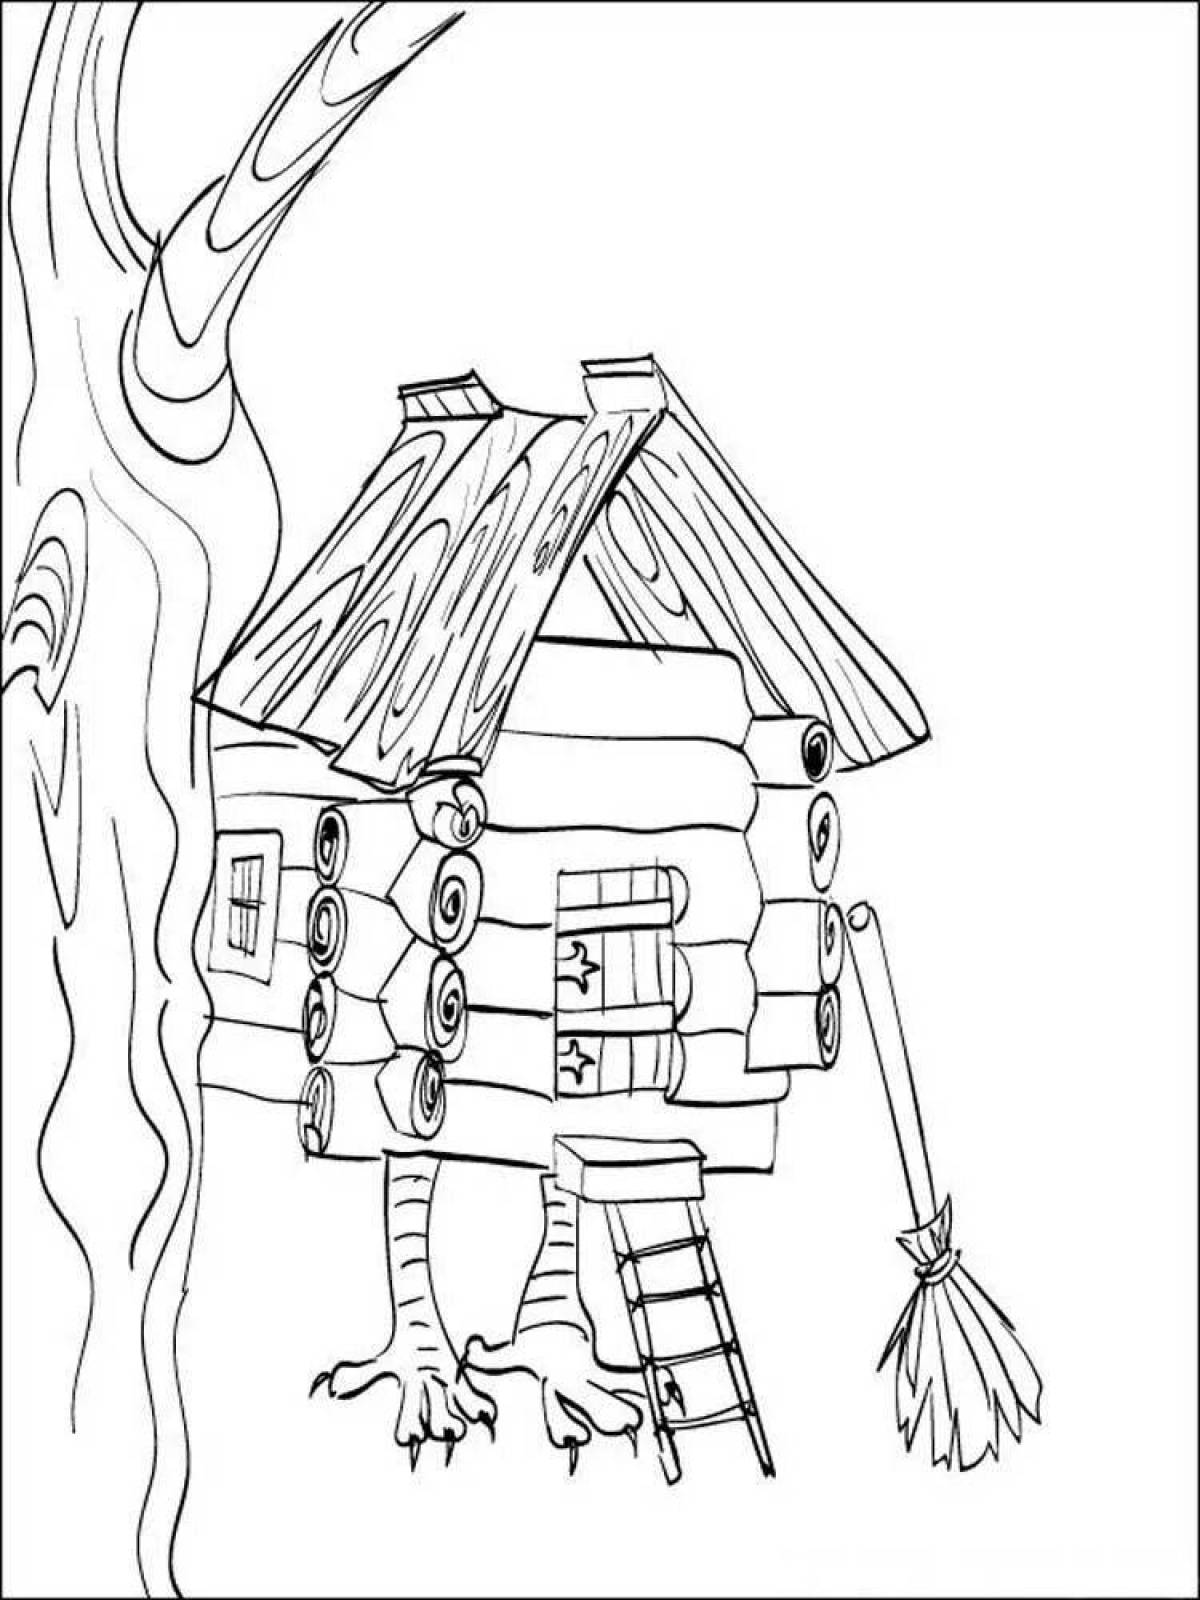 Coloring book Baba Yaga's hut